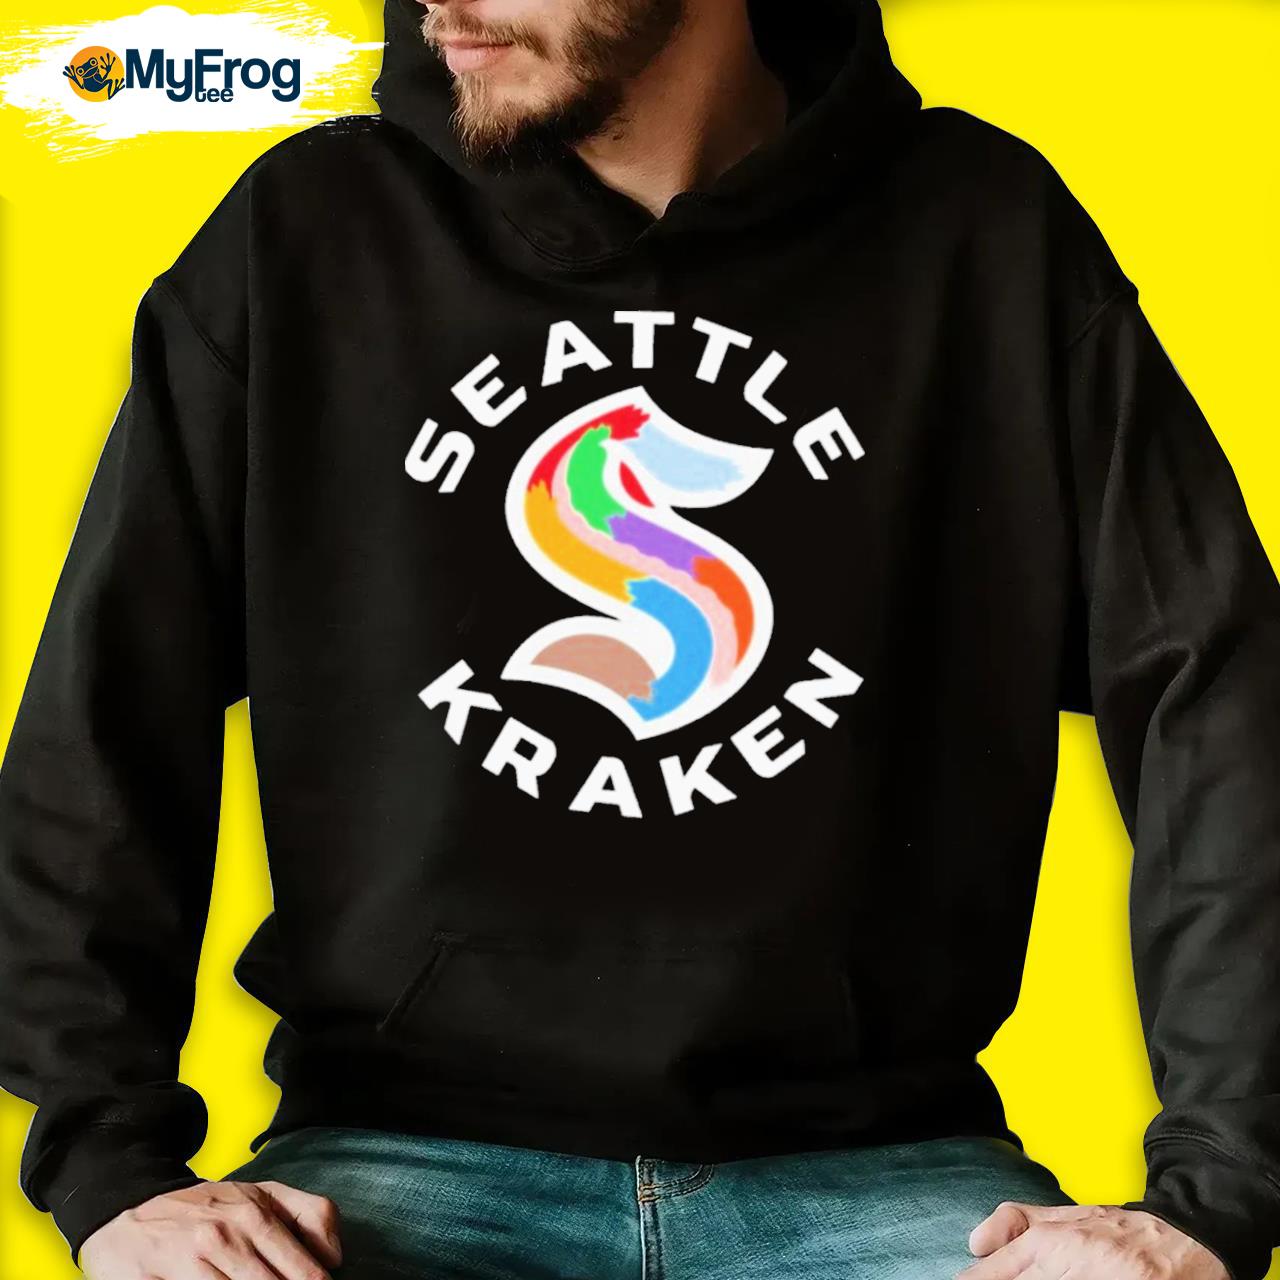 Seattle kraken pride shirt, hoodie, sweater, long sleeve and tank top